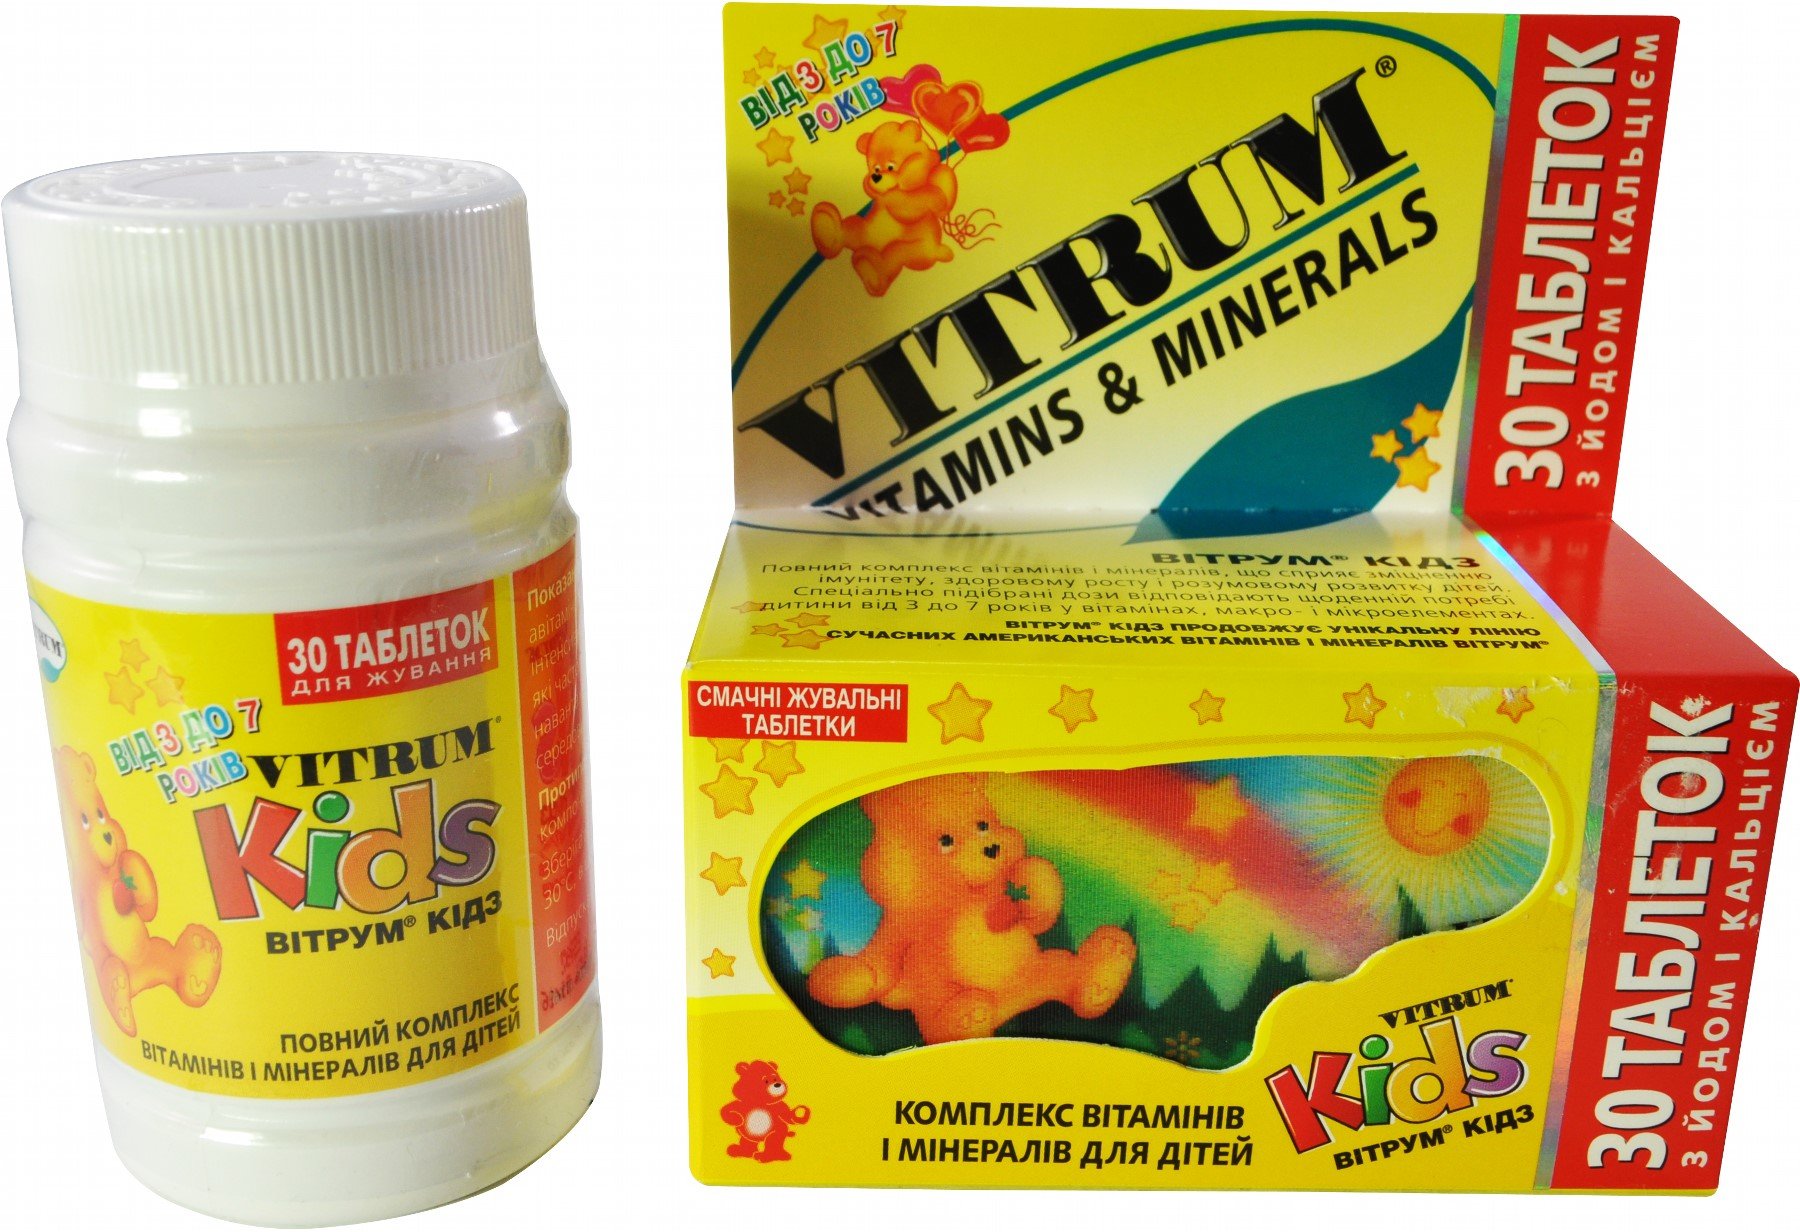 Хороший комплекс витаминов для детей. Витамины для детей. Комплекс витаминов для детей. Витрум детские витамины. Vitrum витамины для детей.